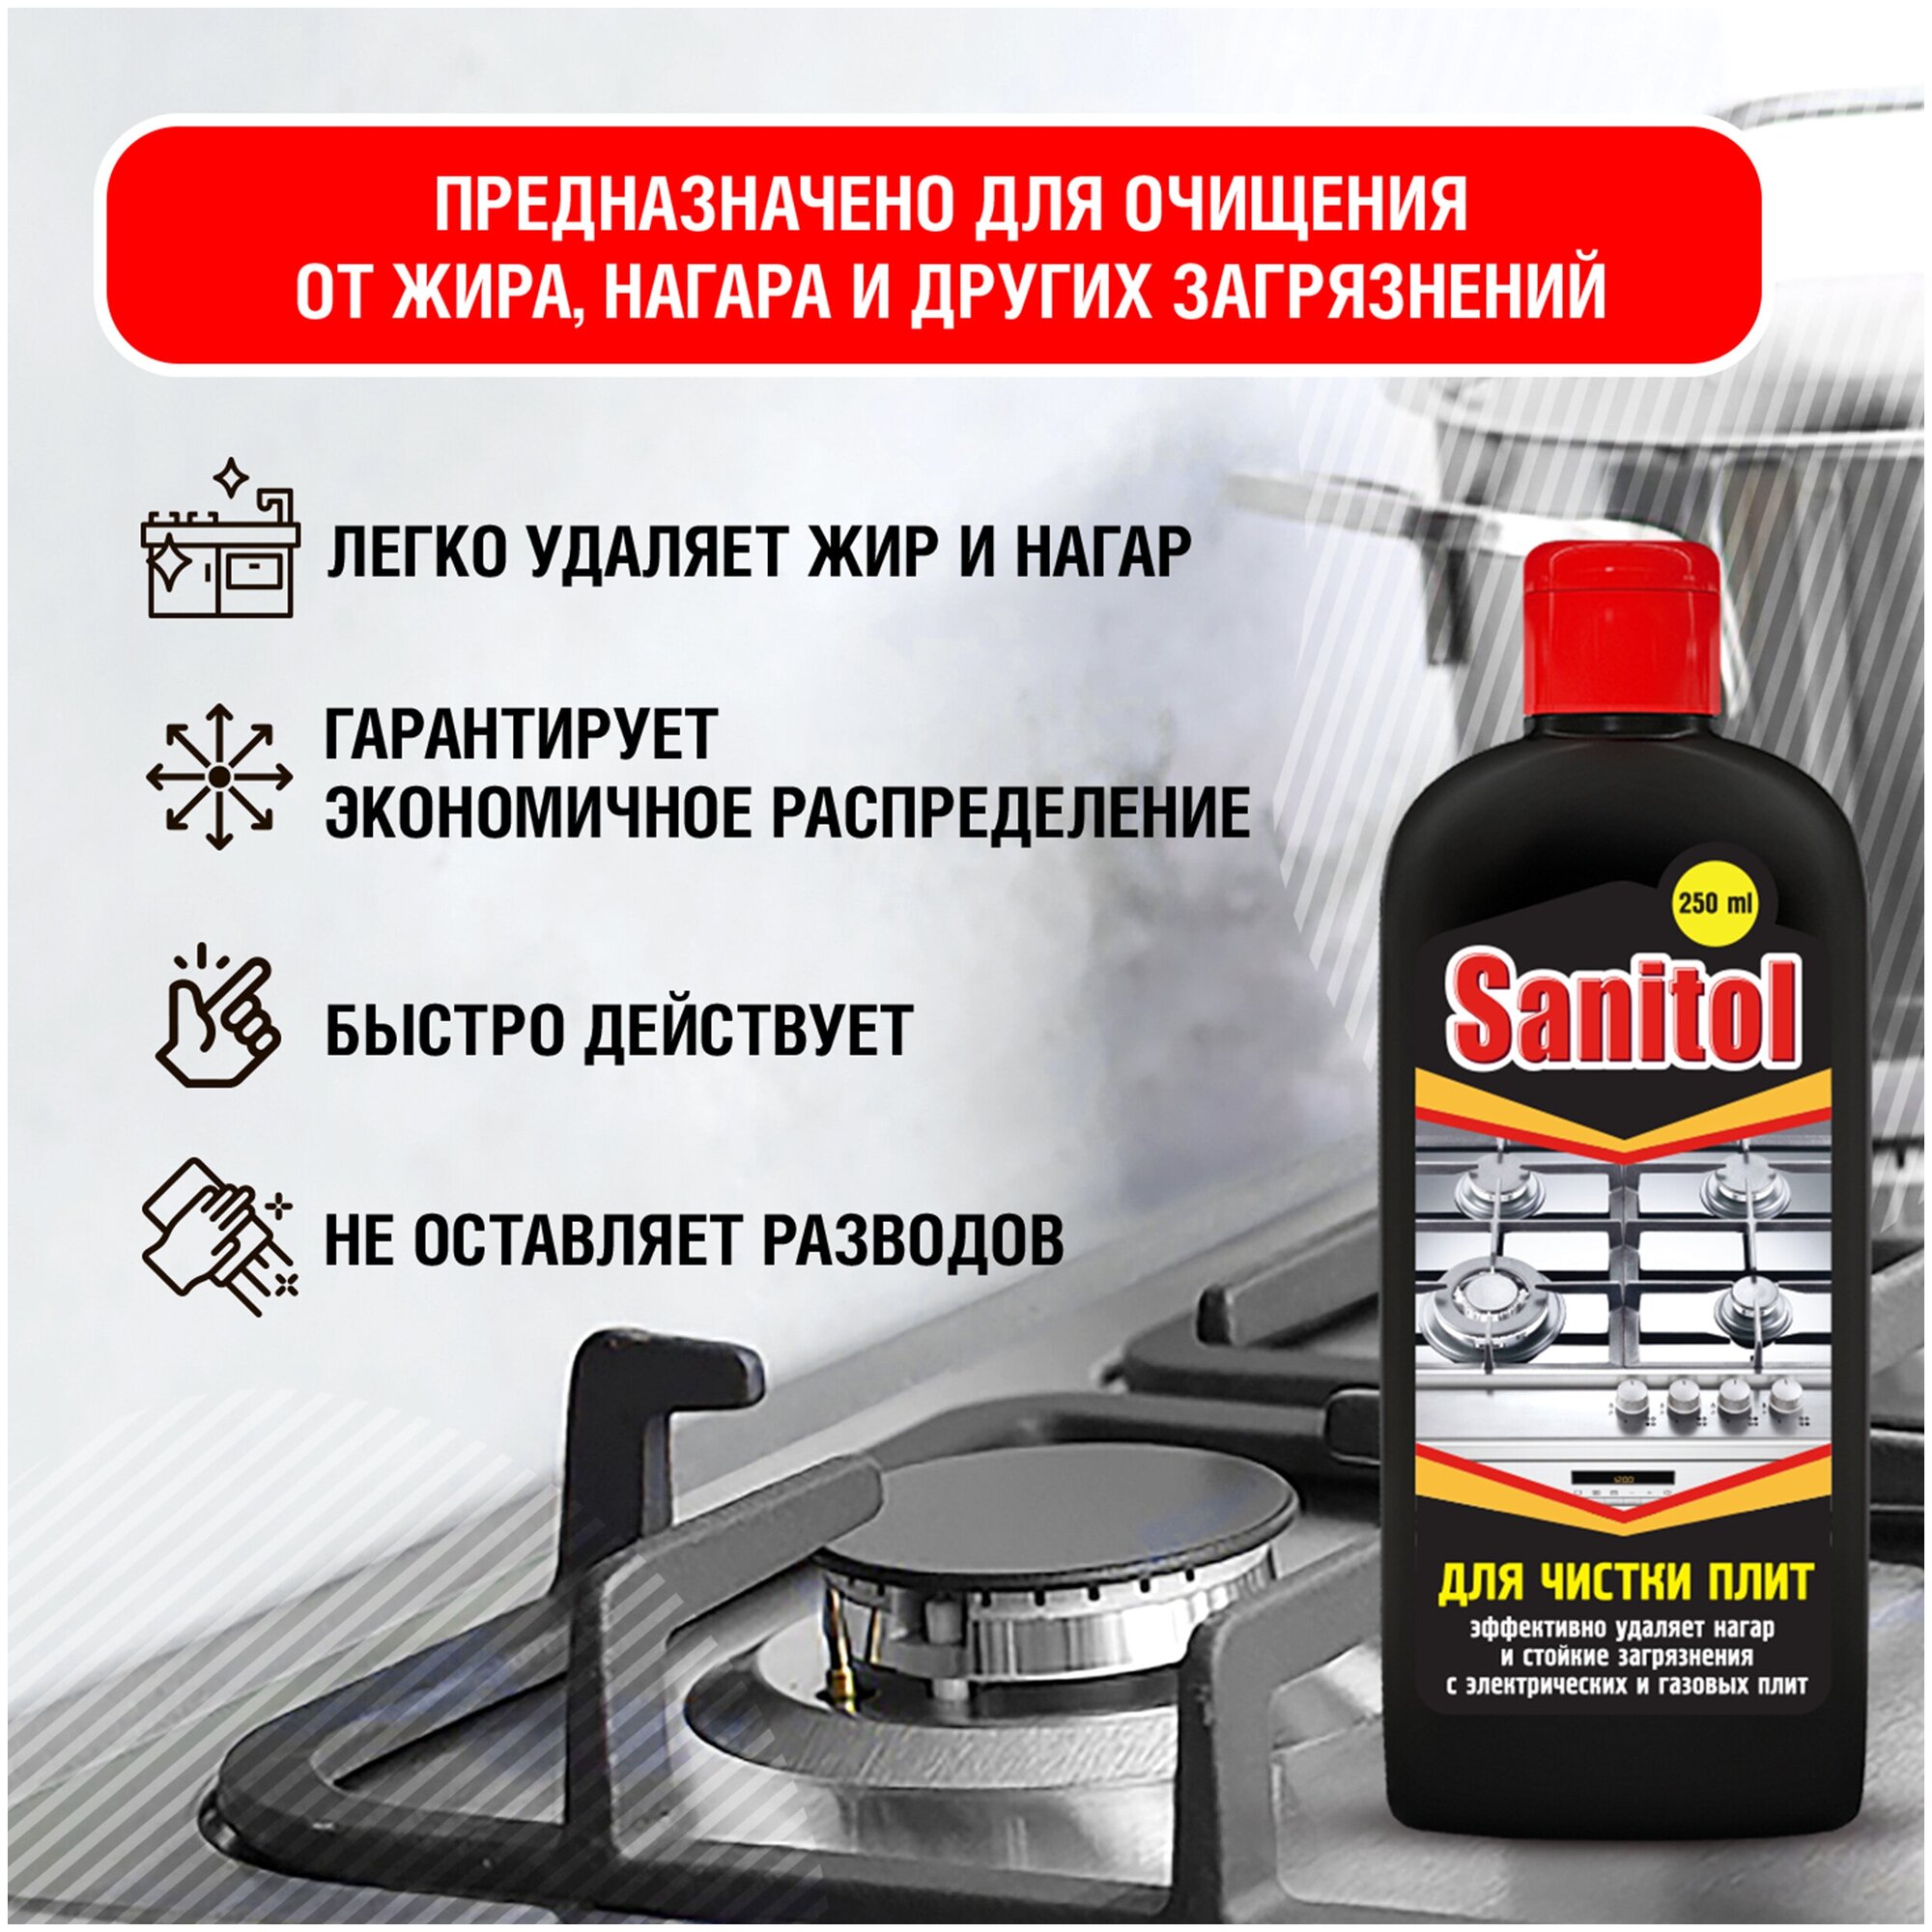 Sanitol / Средство для чистки плит, духовых шкафов, грилей, 2 ШТ. х 250 МЛ. - фотография № 3